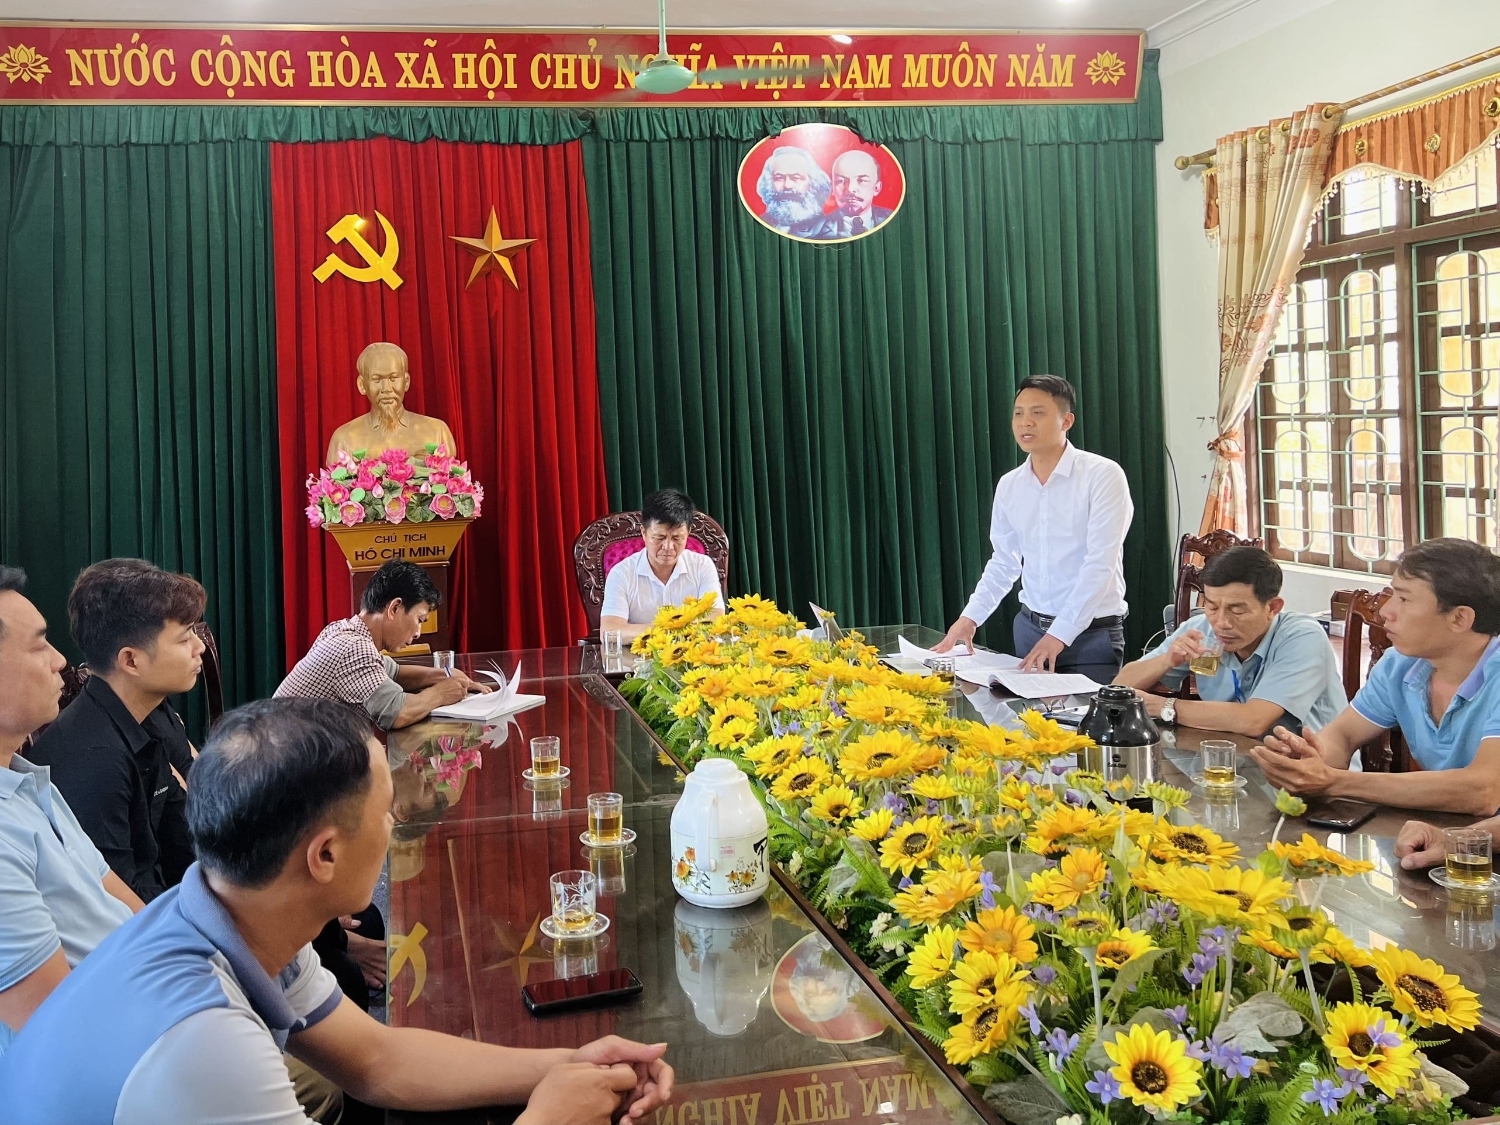 Đồng chí Hồ Cảnh Thuận, Thị ủy viên, BÍ thư Đảng ủy phát biểu chỉ đạo Chi bộ Nghề cá